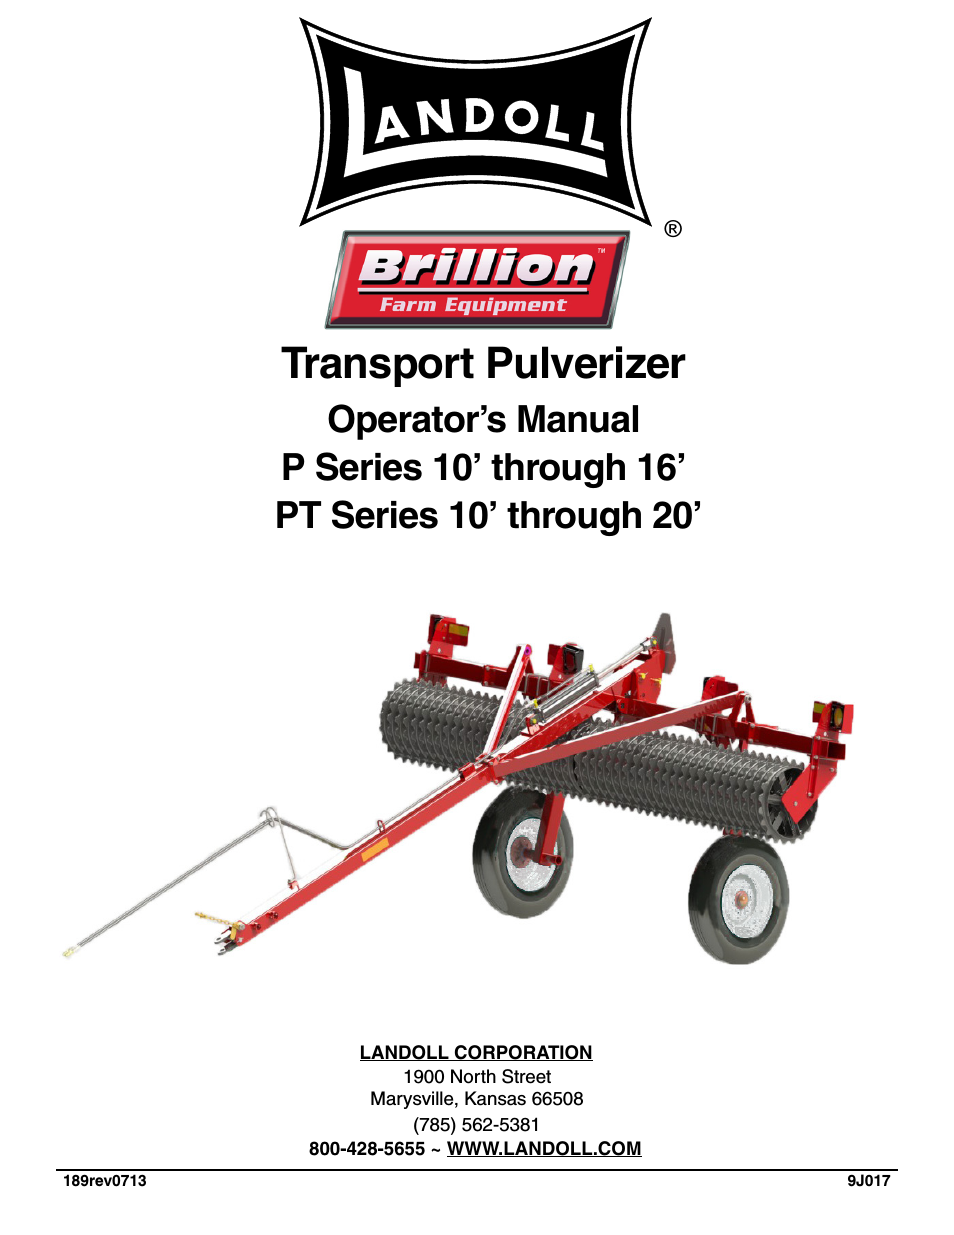 PT Series 10 through 20 Transport Pulverizer